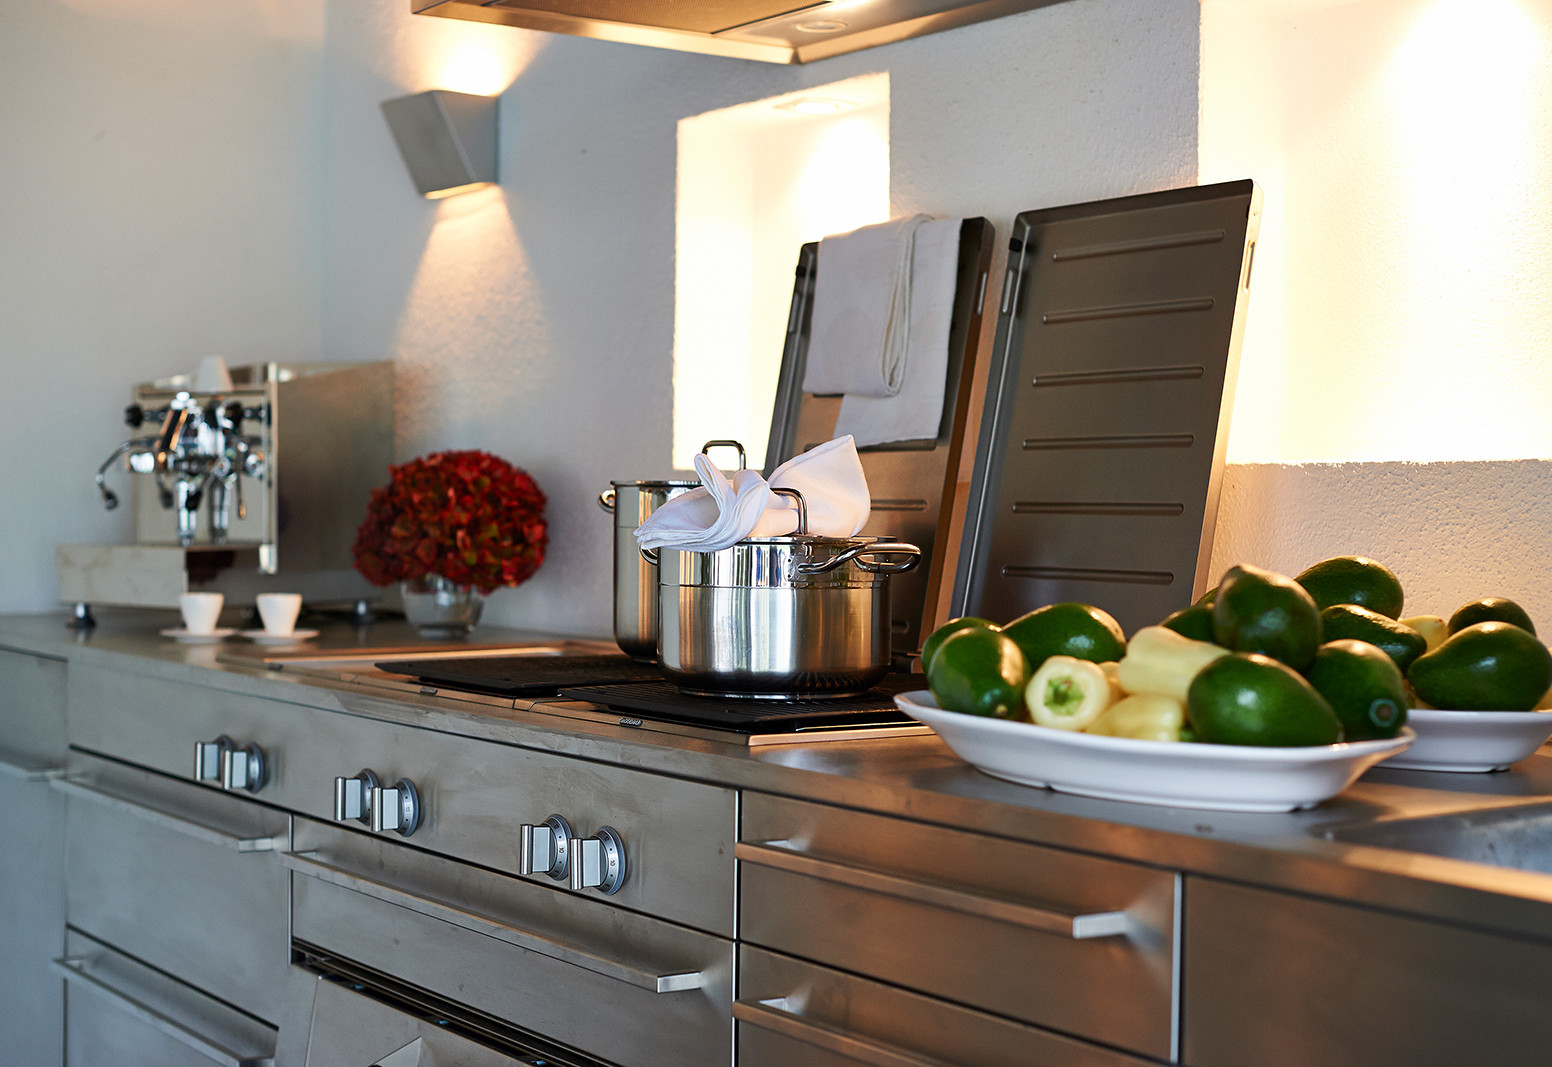 Hier sehen Sie ein Bild von Stefanie Raum Outdoor Küche Raum Contemporary Interior